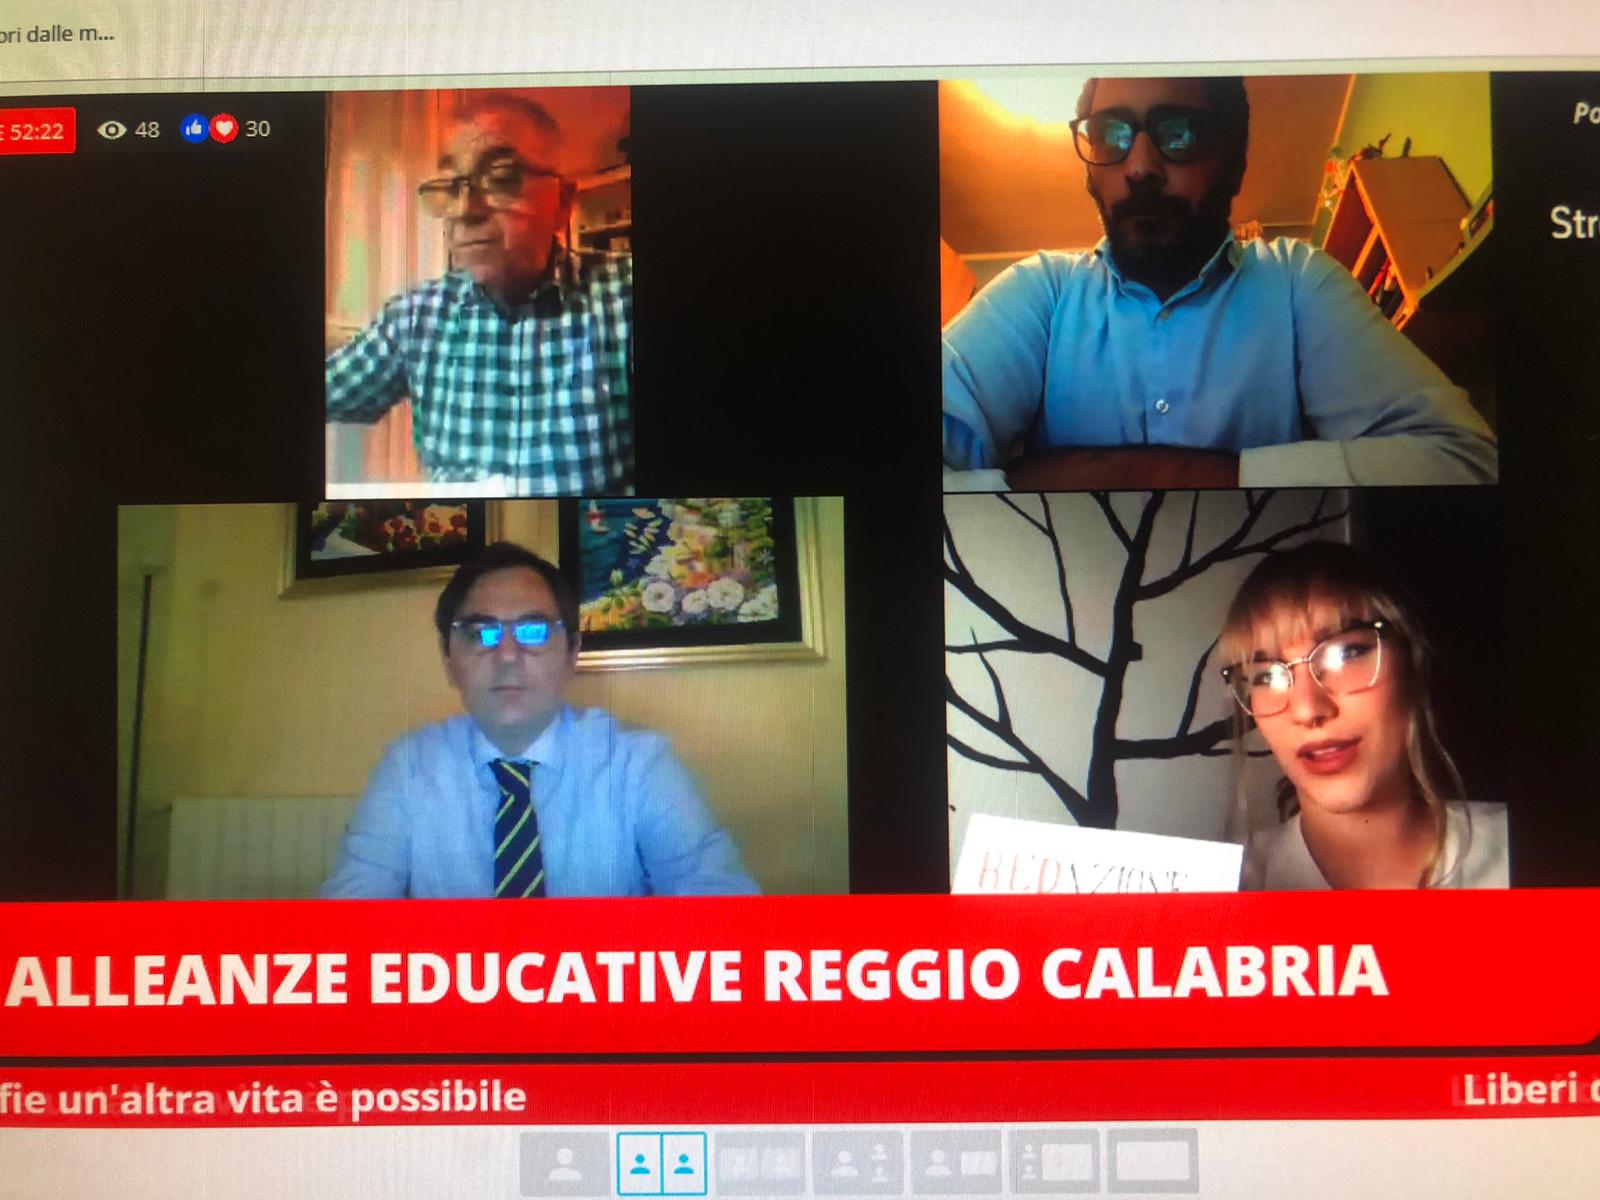 Alleanze educative Reggio Calabria, secondo live meeting. Fare rete è un’alternativa alle mafie